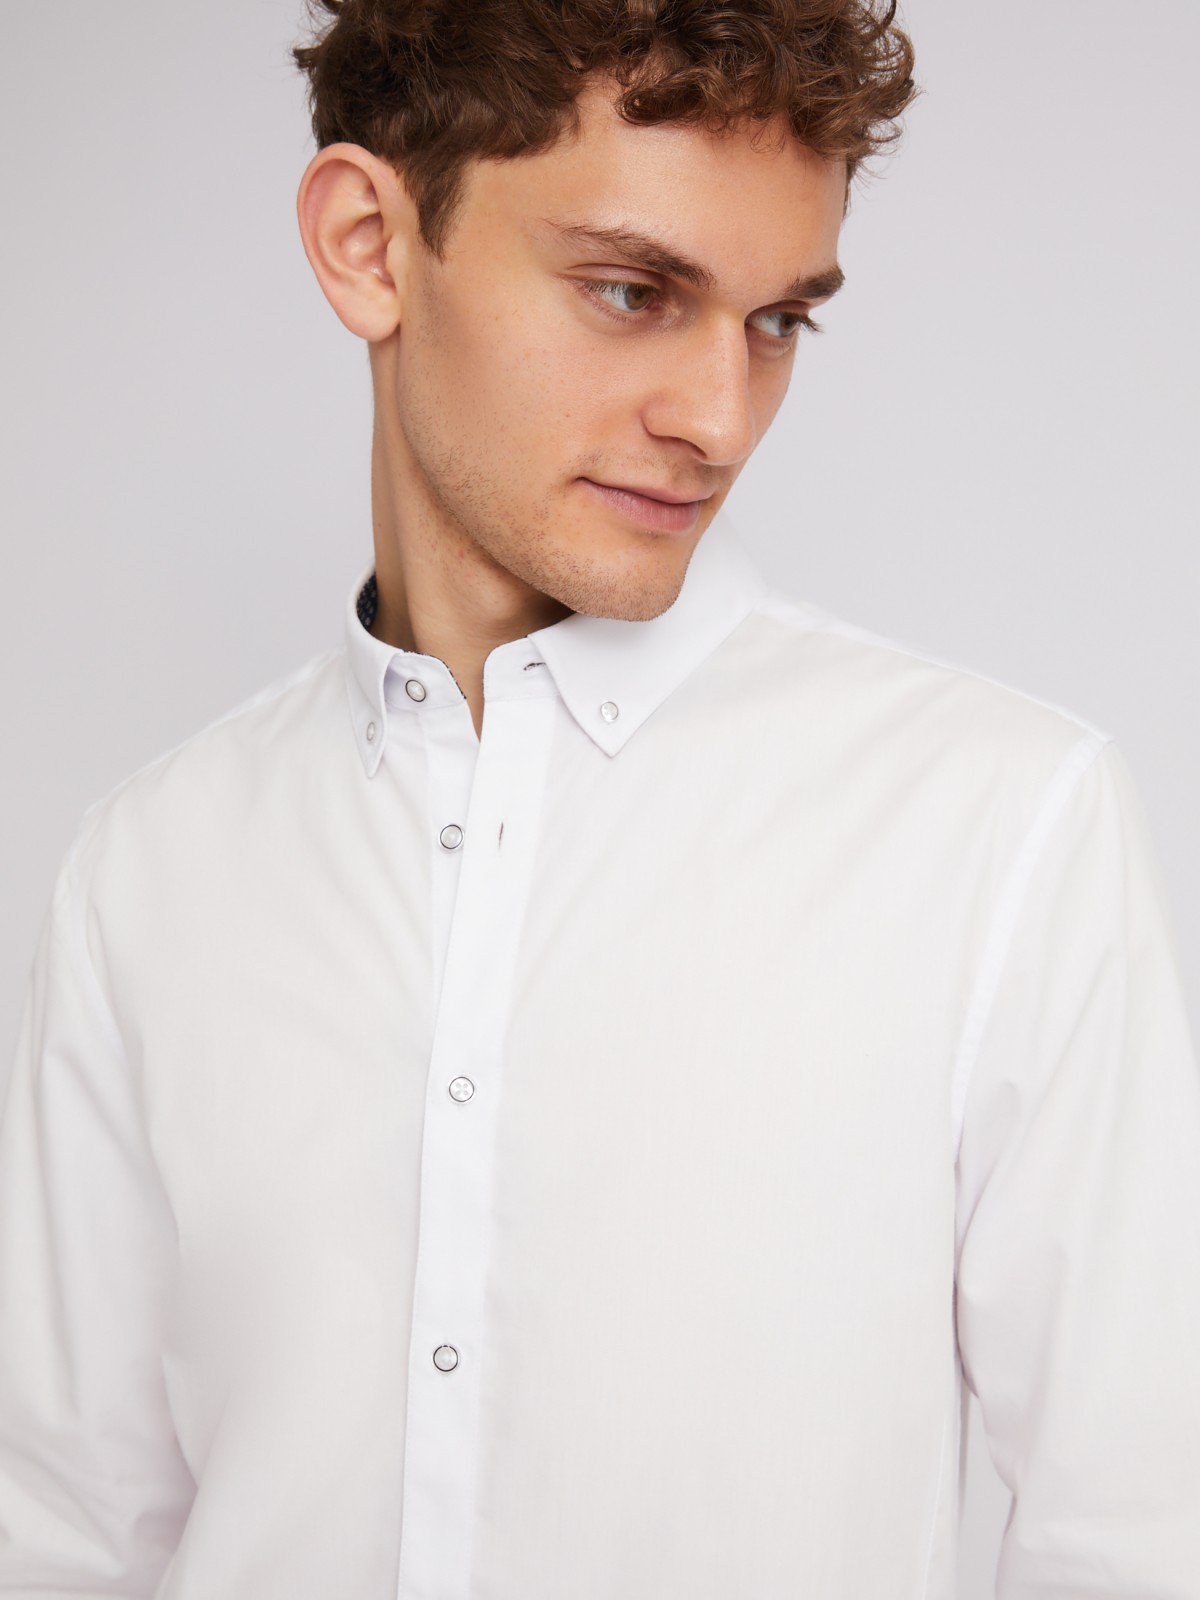 Офисная рубашка полуприталенного силуэта с длинным рукавом zolla 213322159062, цвет белый, размер XS - фото 4